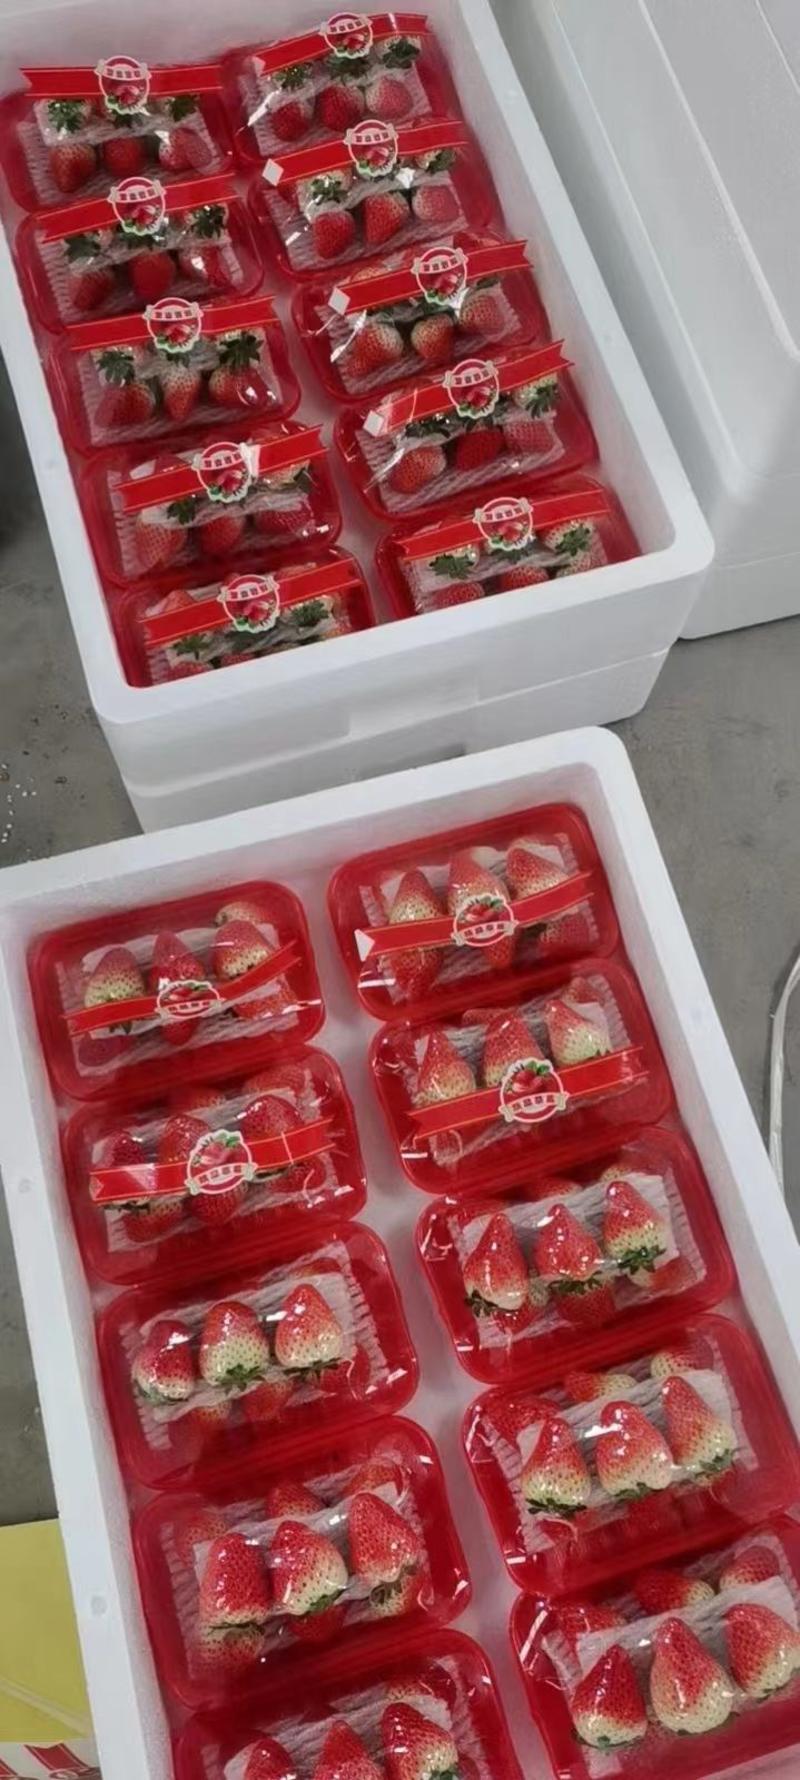 精品天仙醉草莓对接超市一件代发全国发货酸甜可口